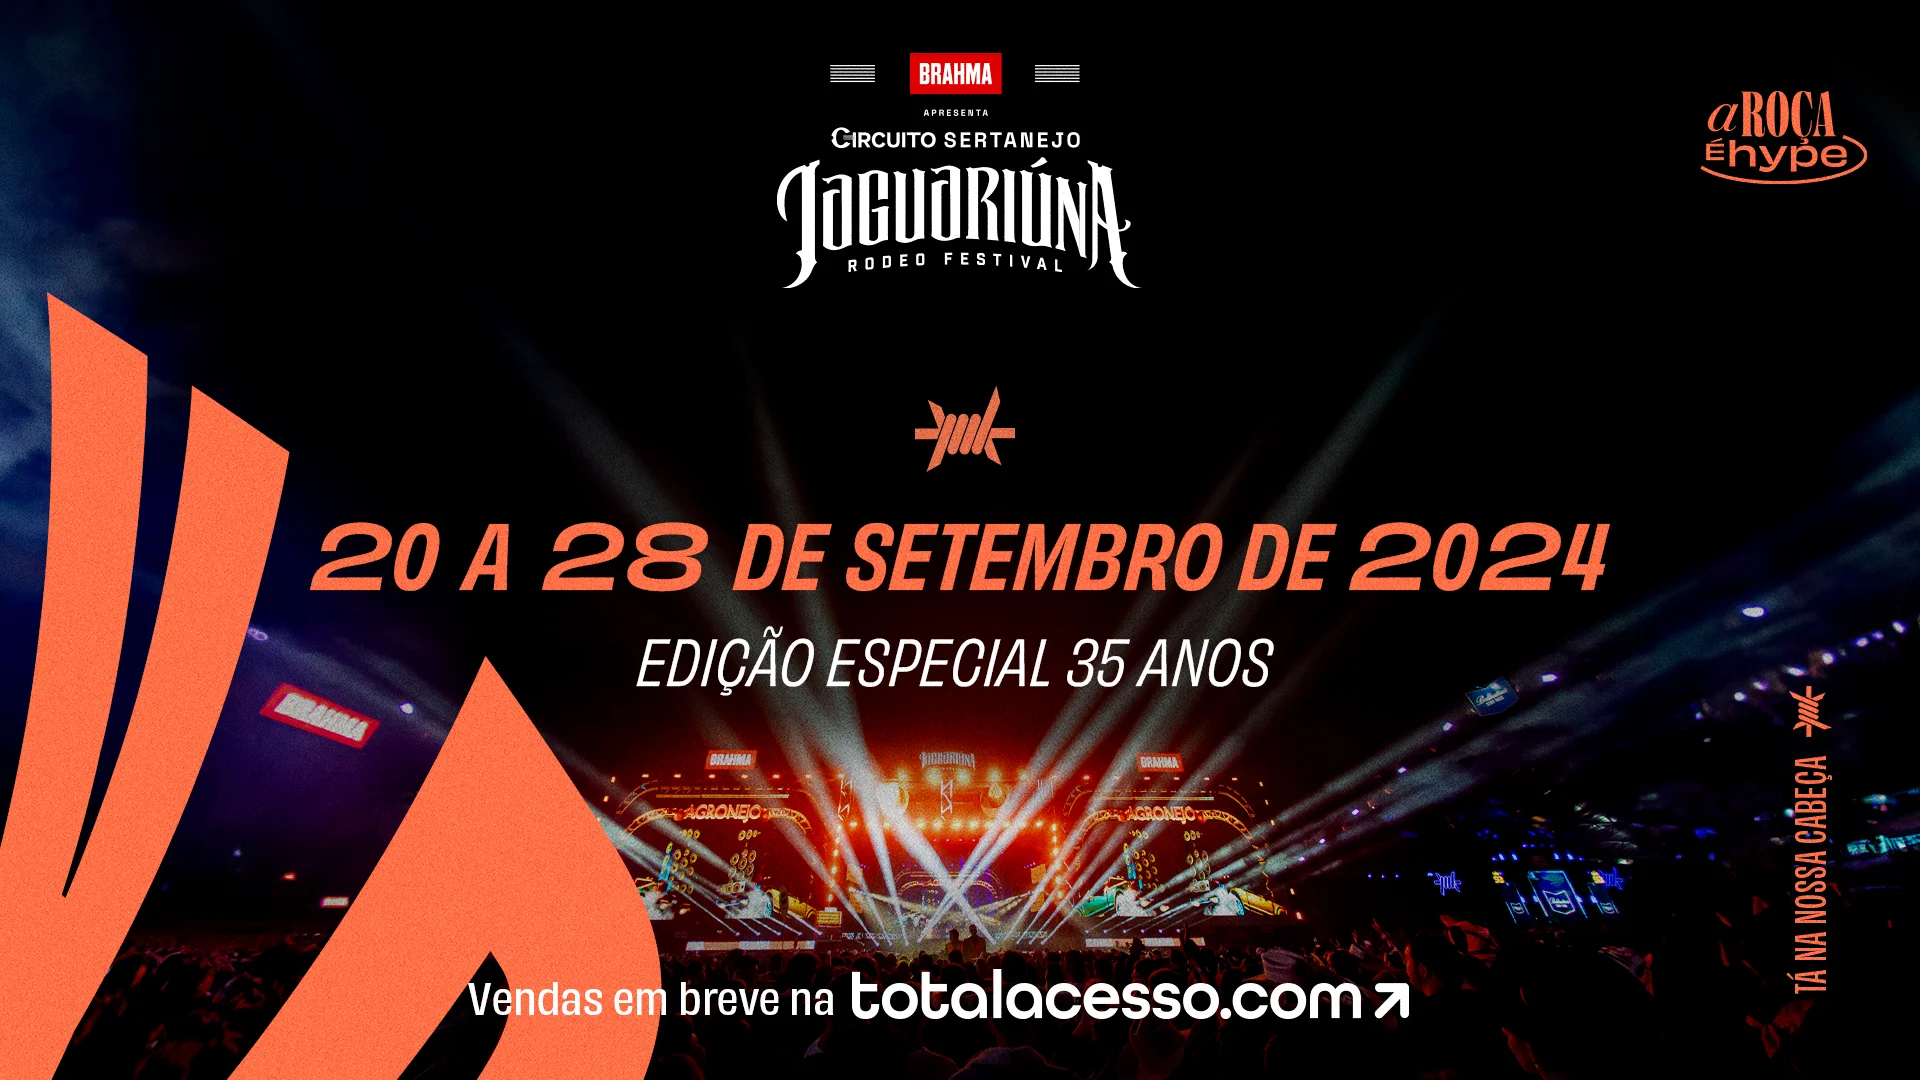 Jaguariúna Rodeo Festival 2017 abre locais de venda; veja onde comprar  ingressos